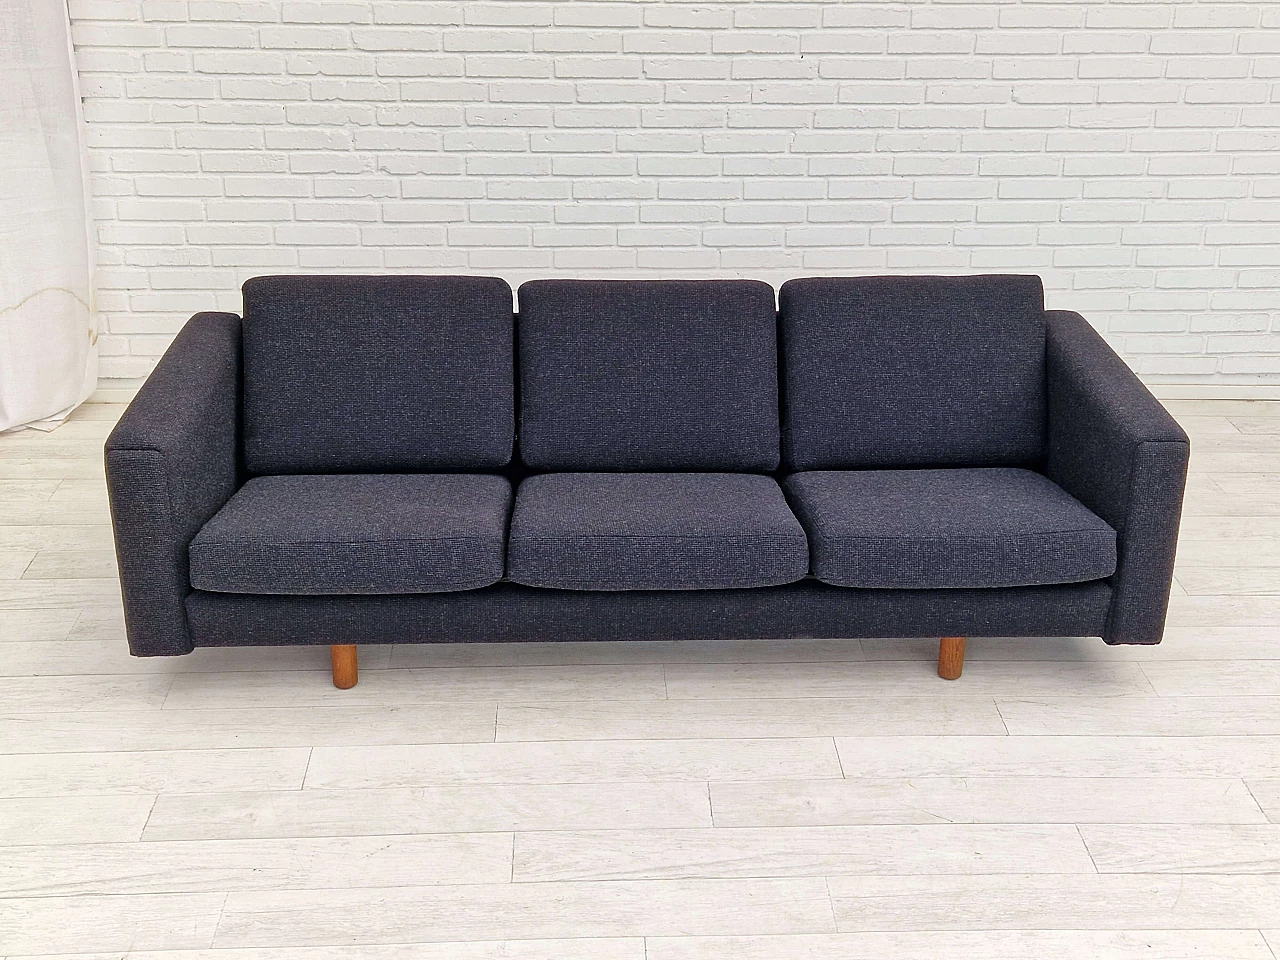 GE300 sofa by Hans J. Wegner for Getama, 1960s 3